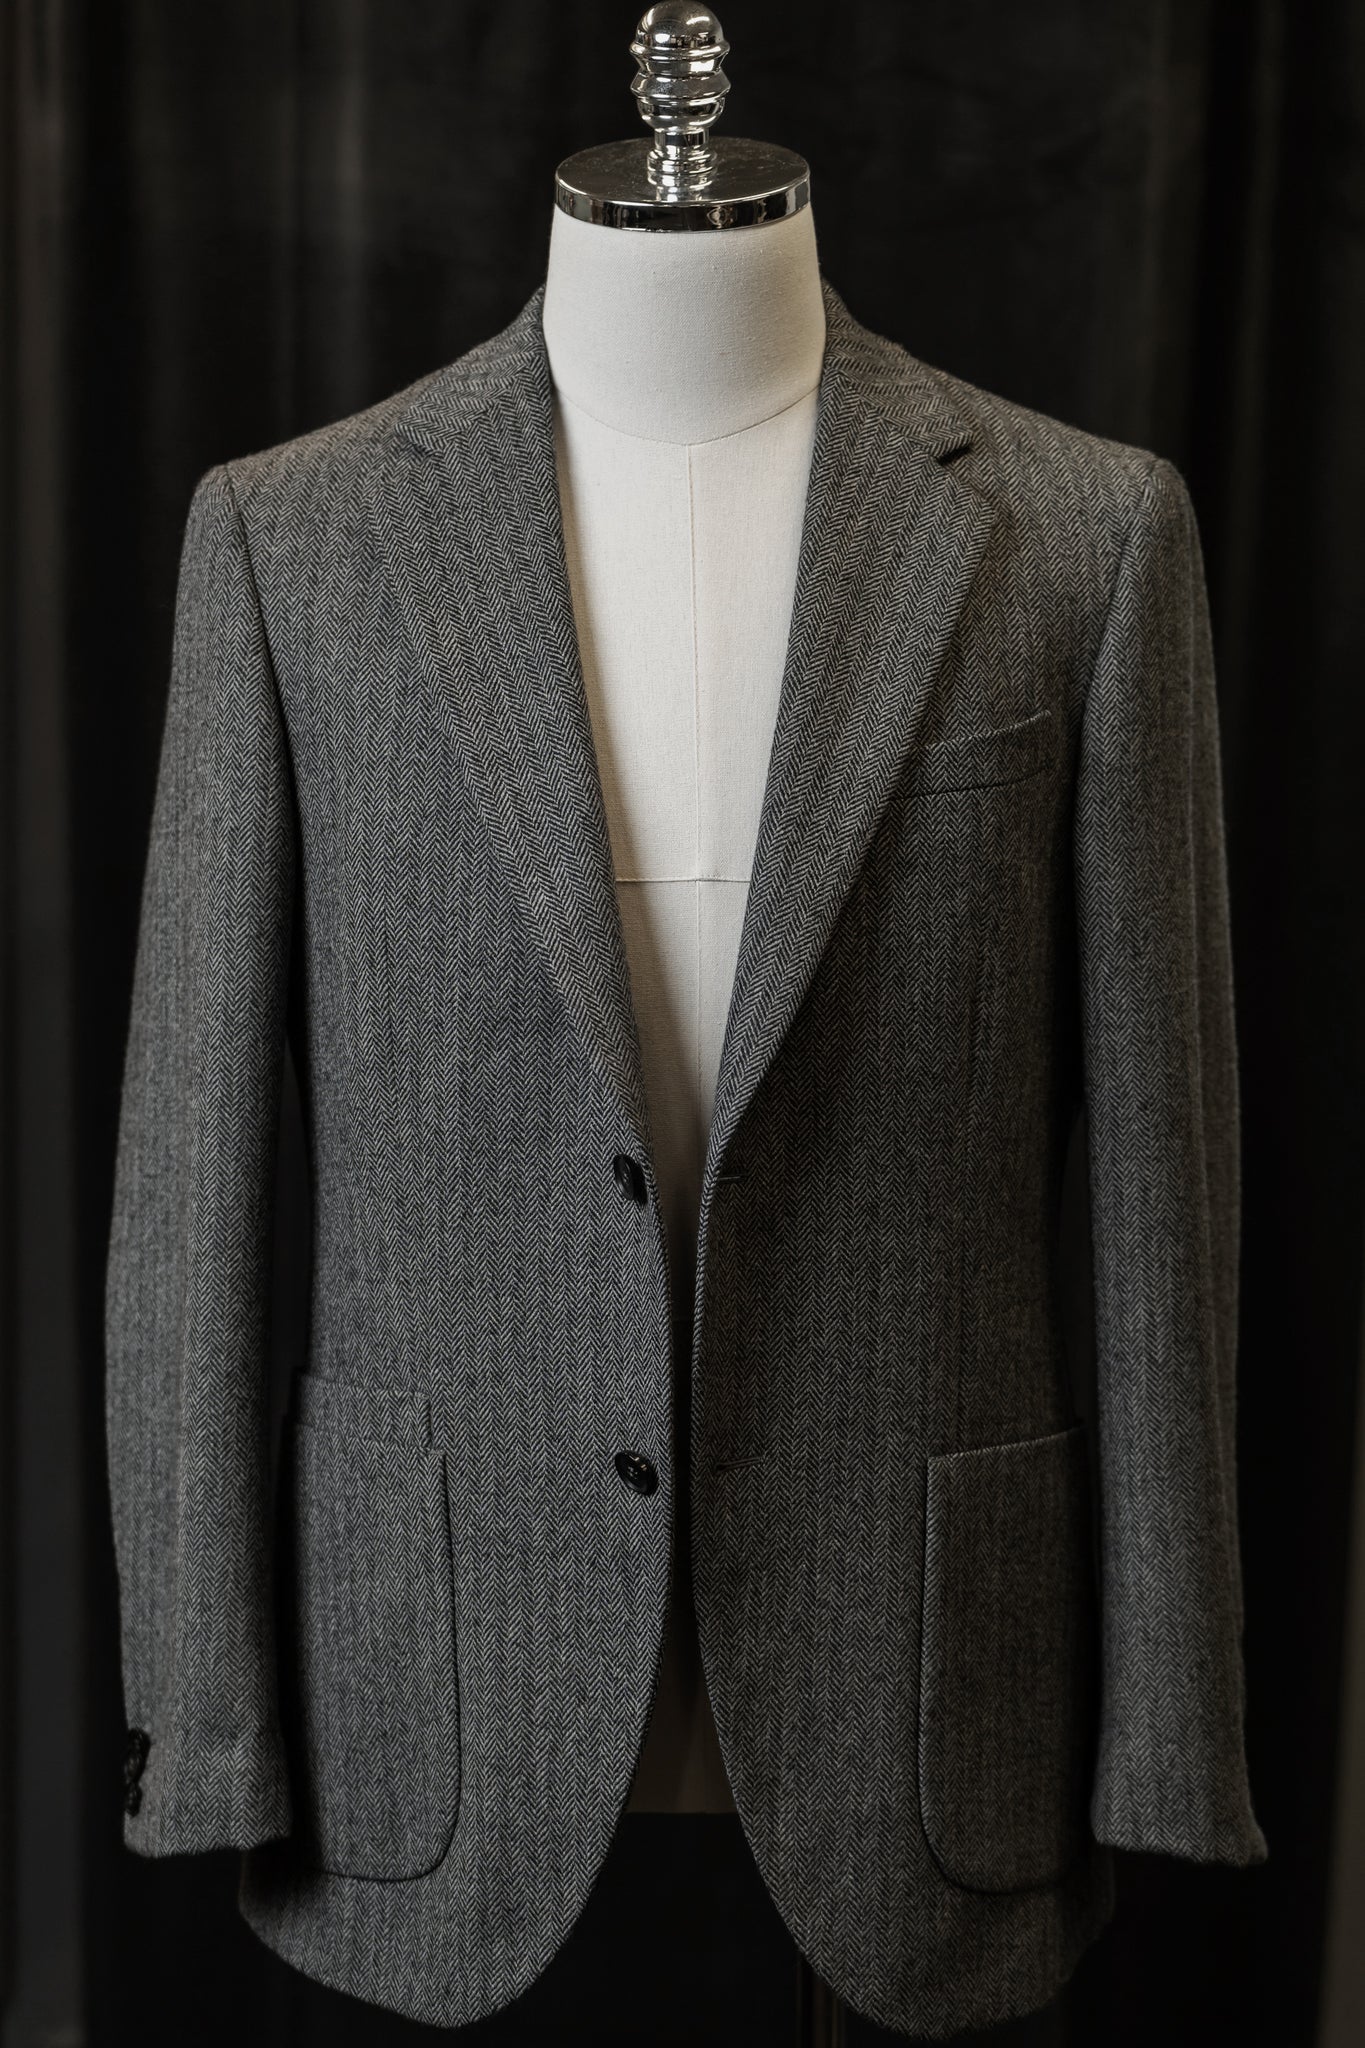 Grey Herringbone Tweed Jackets